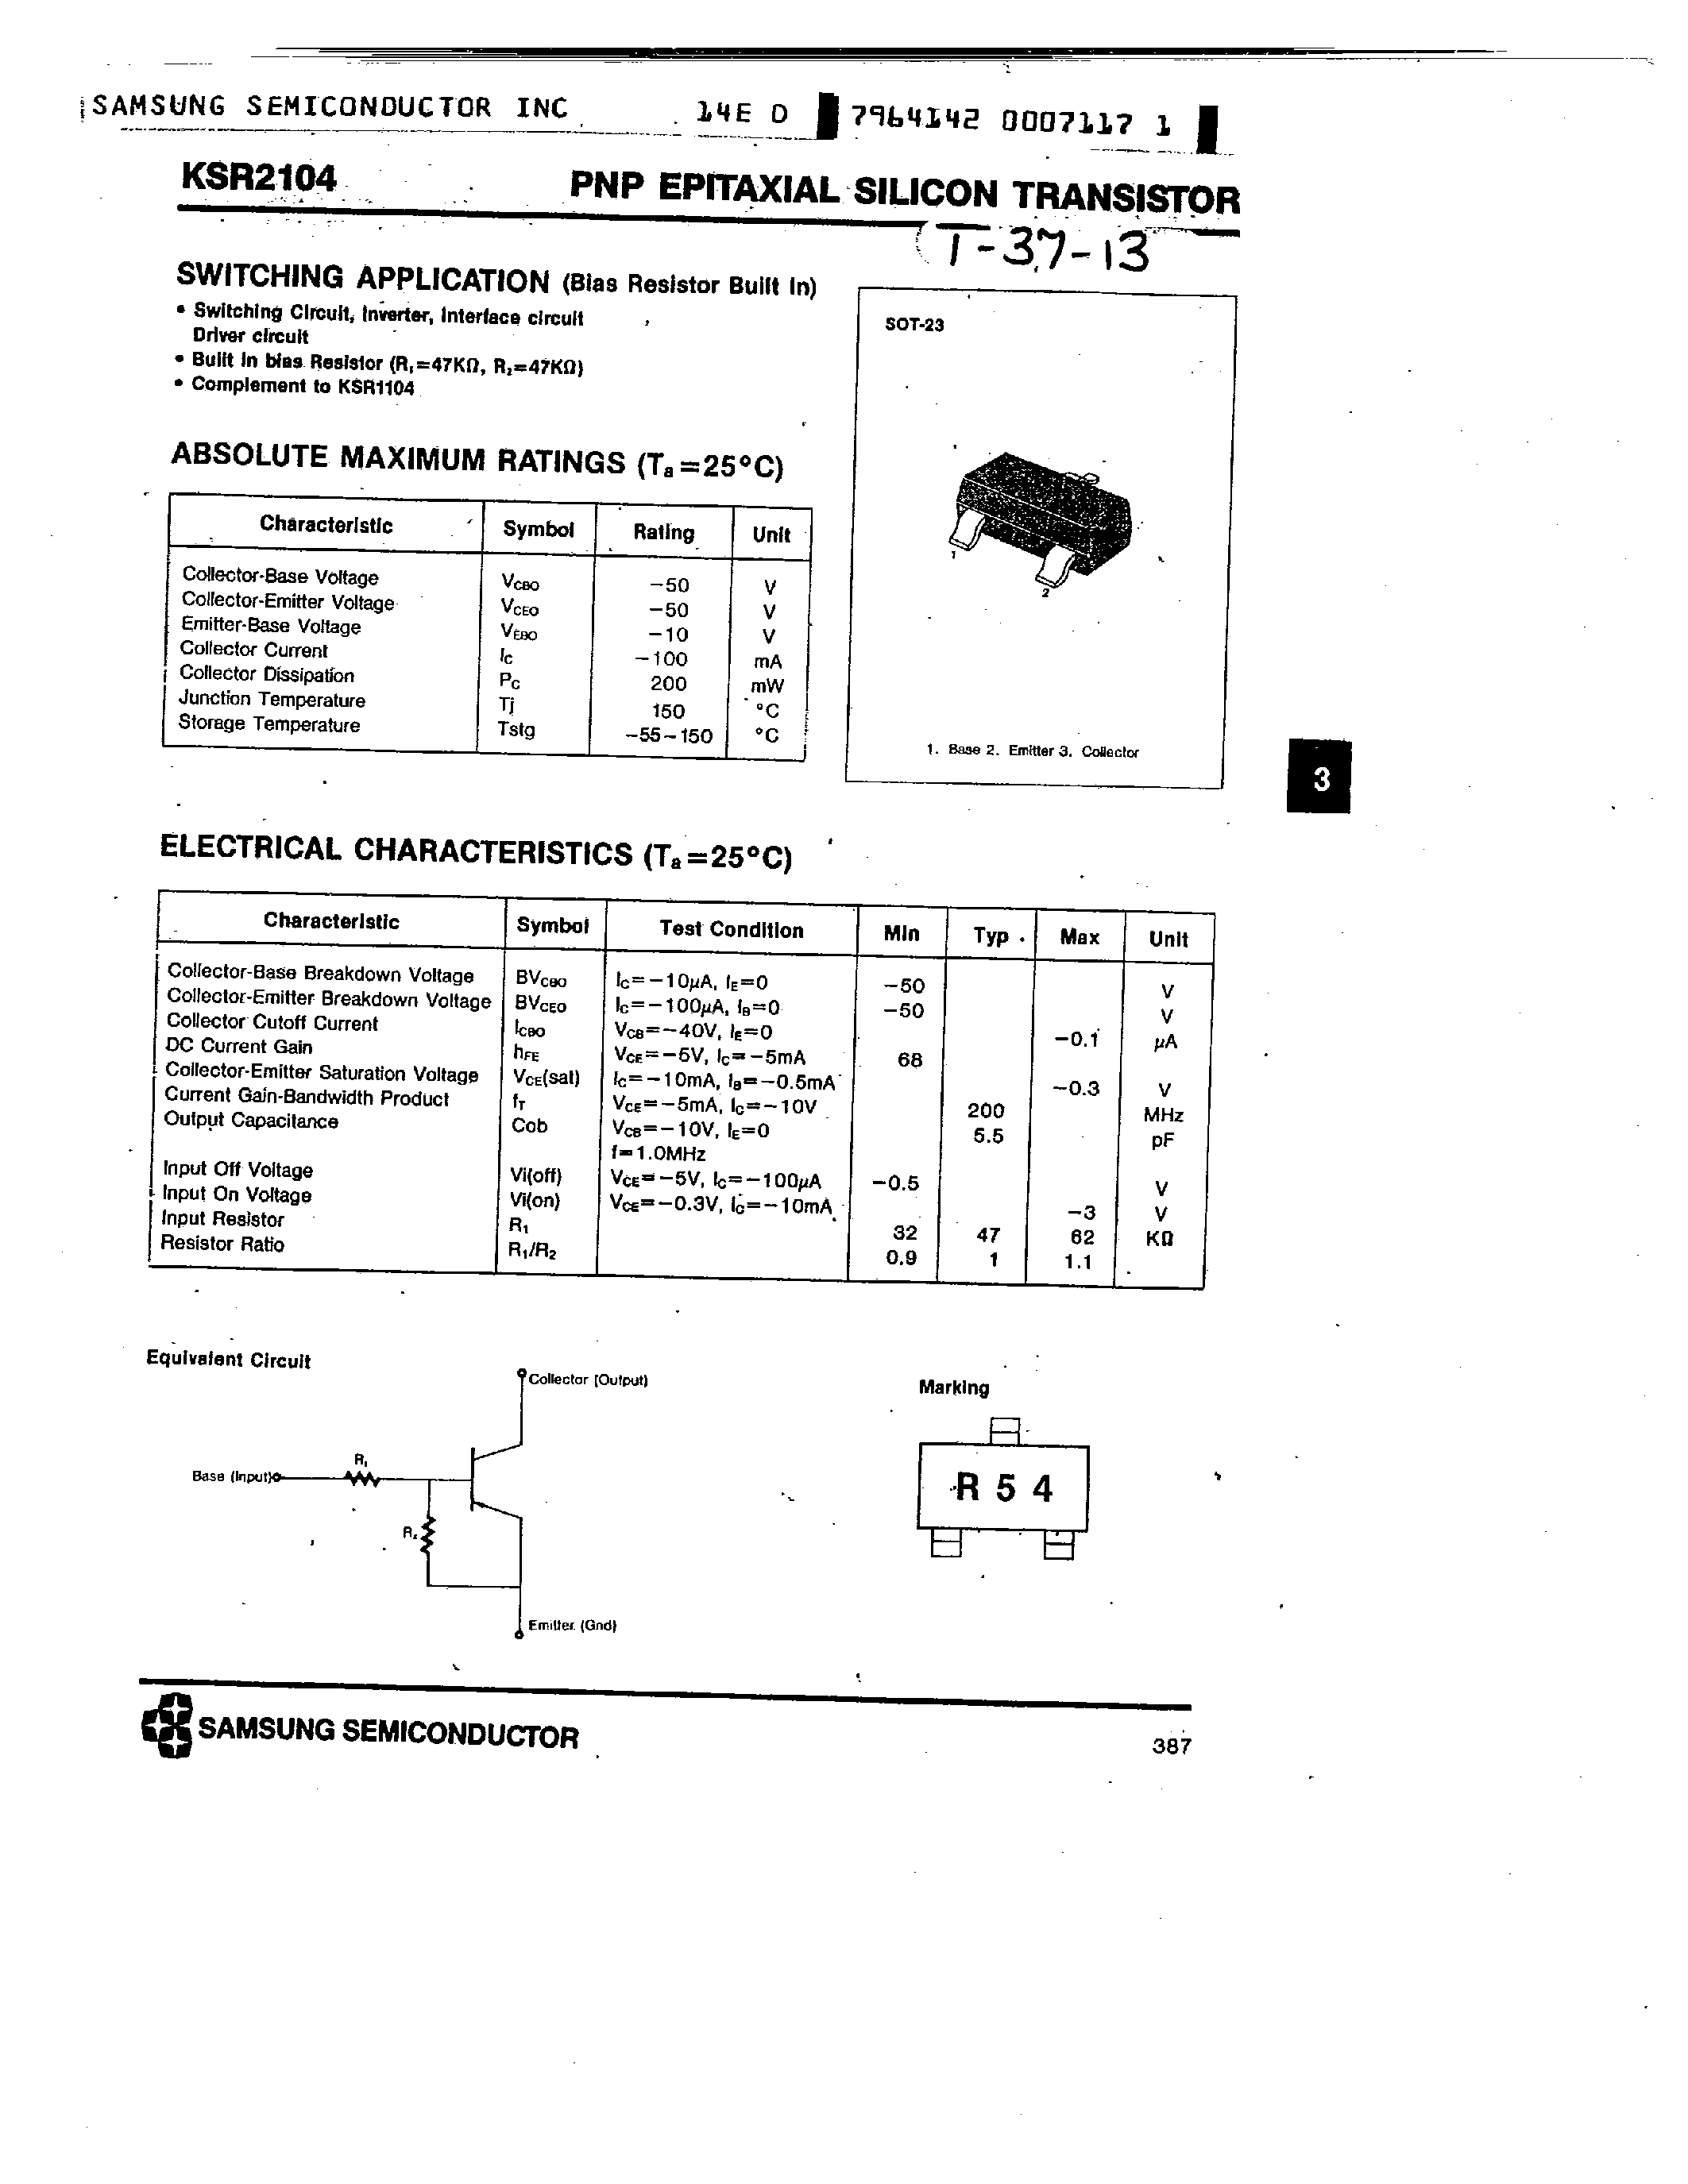 Datasheet KSR2104 - PNP (SWITCHING APPLICATION) page 1